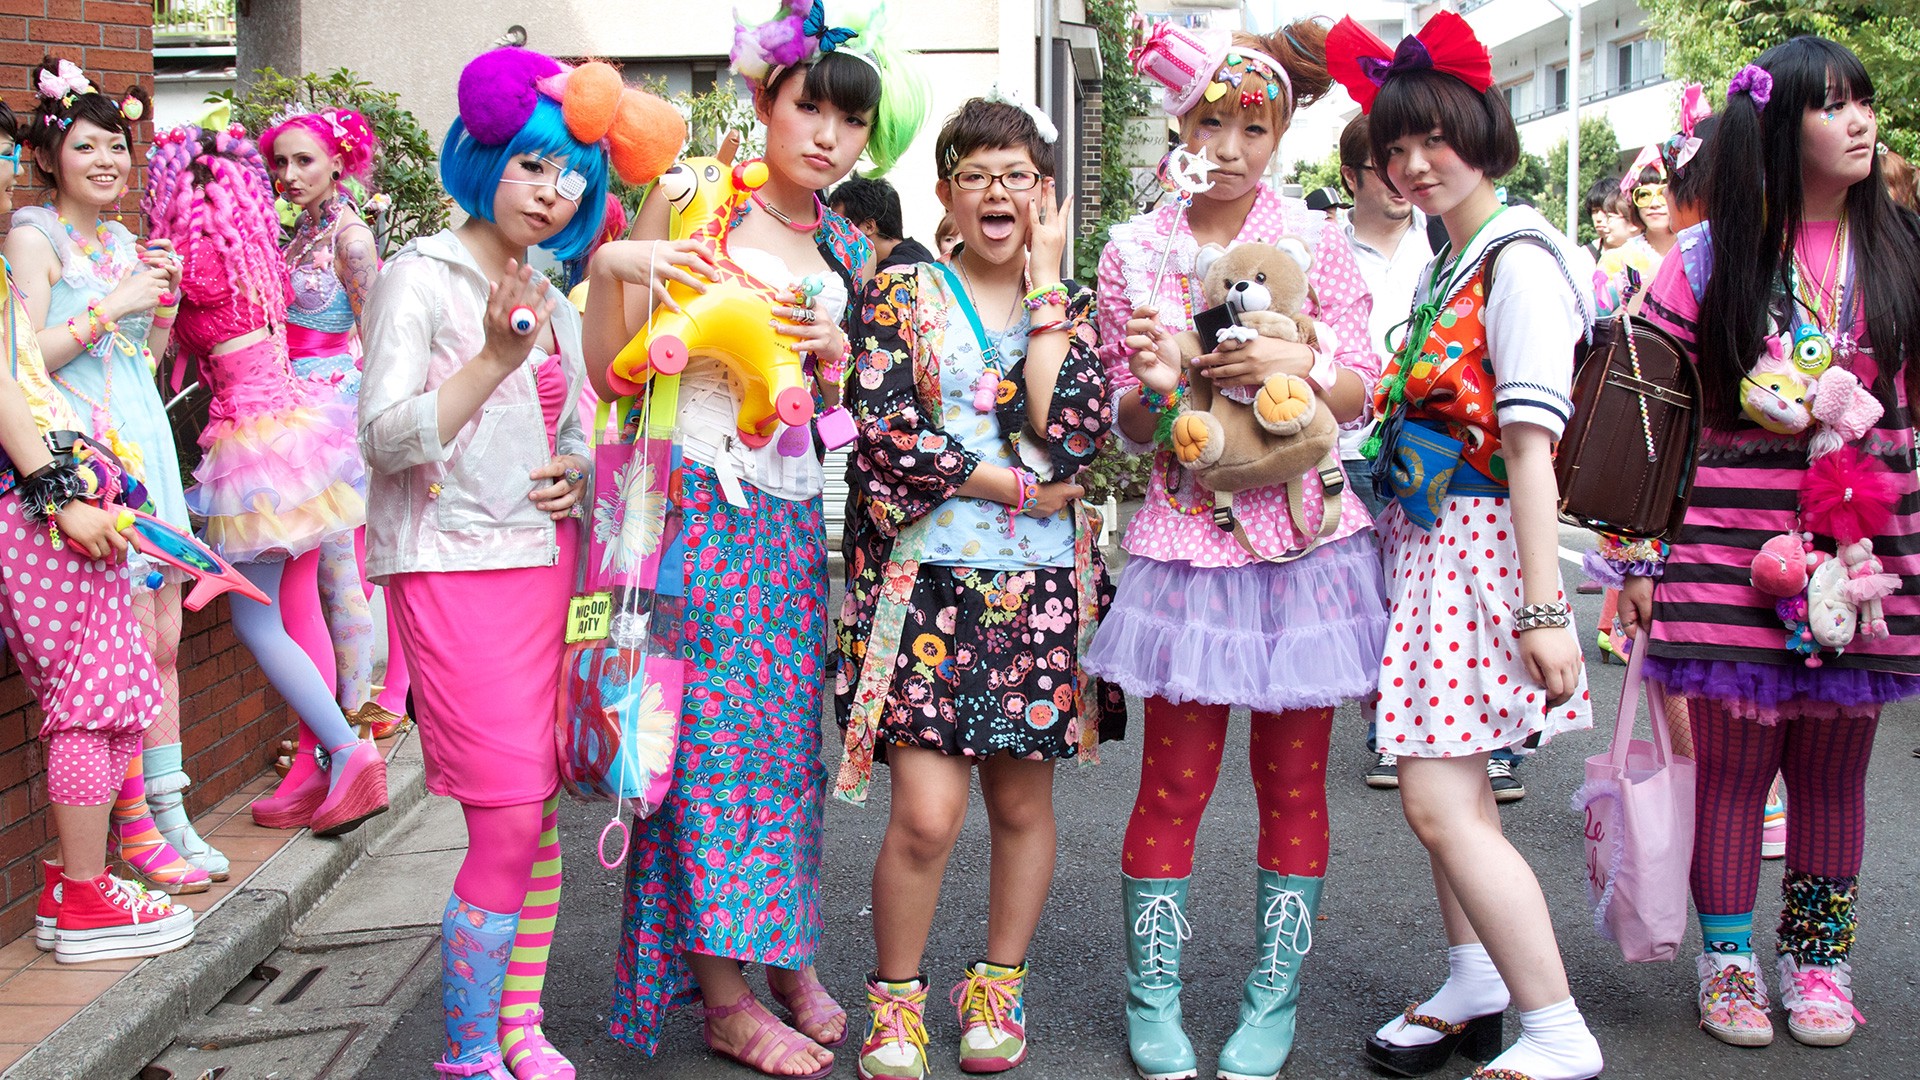 Extrém ruhaköltemények és kiegészítők <br />A tokiói Harajuku negyed utcáit járva olyan izgalmas jelenségekkel is találkozhatunk, amelyeket szinte csak Japánban láthatunk. A fiatalok egy része igen extrémen öltözik, így az általuk is közkedvelt negyedben megfigyelhetjük a japán öltözködés legkirívóbb darabjait is<br />Forrás: Medium.com/TokyoFashion<br />